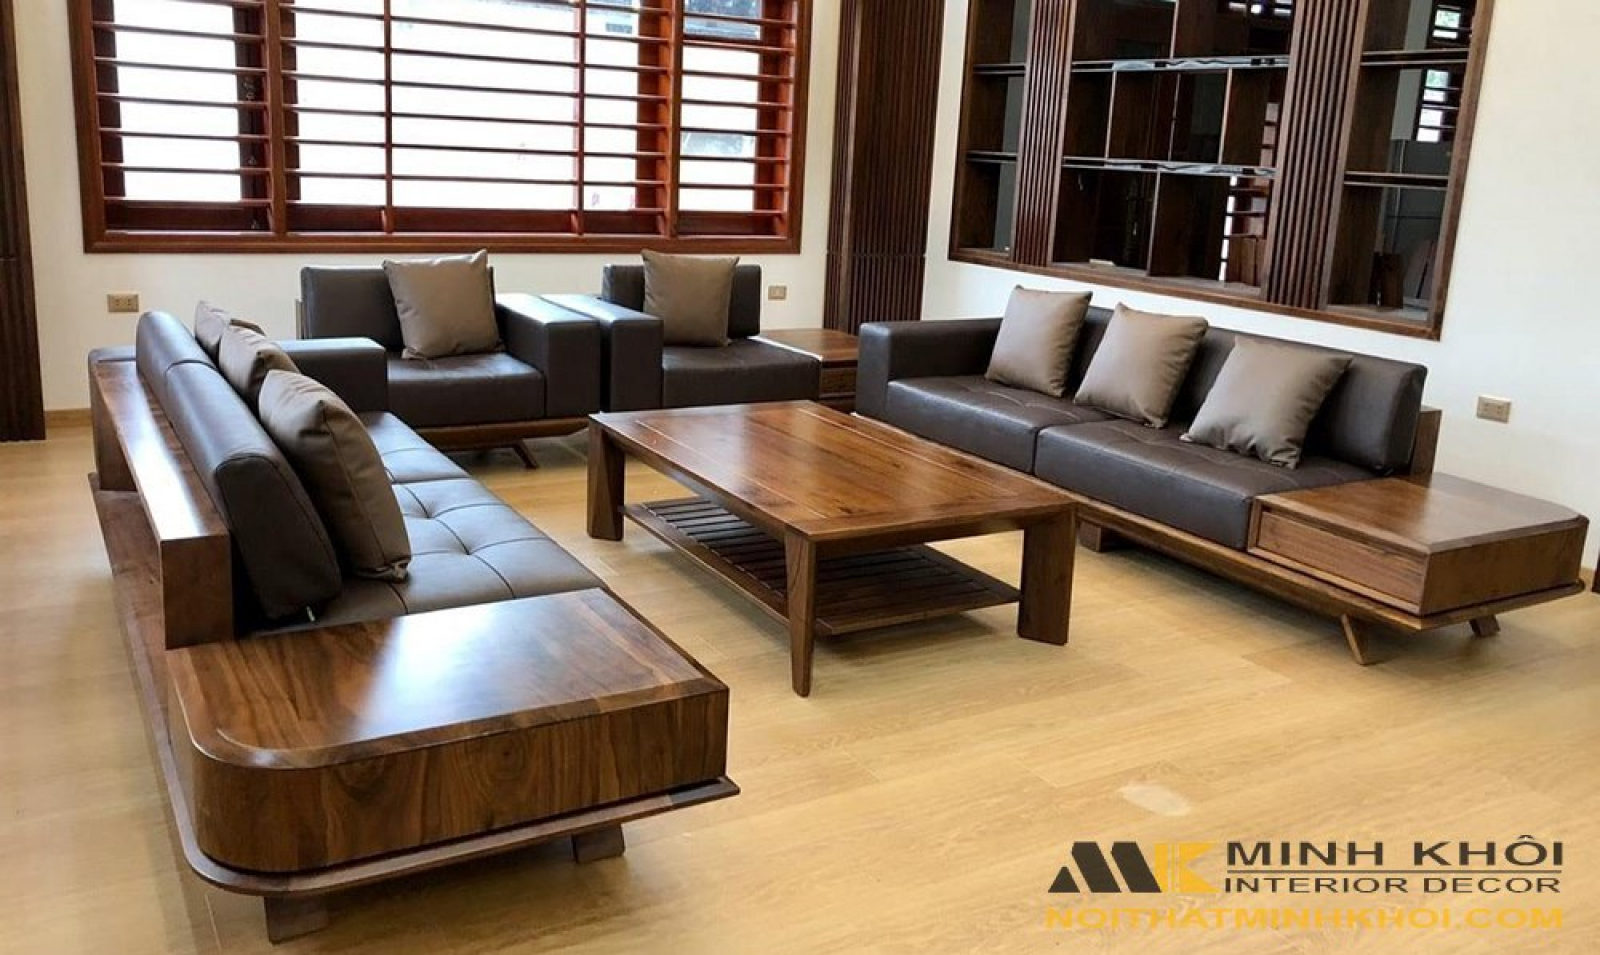 Sofa gỗ sồi - Sofa gỗ sồi được sản xuất từ nguồn nguyên liệu chất lượng cao, tạo ra không gian sống ấm cúng và mộc mạc. Với thiết kế mới nhất, sofa gỗ sồi mang đến cho không gian của bạn vẻ đẹp đơn giản và chất lượng.